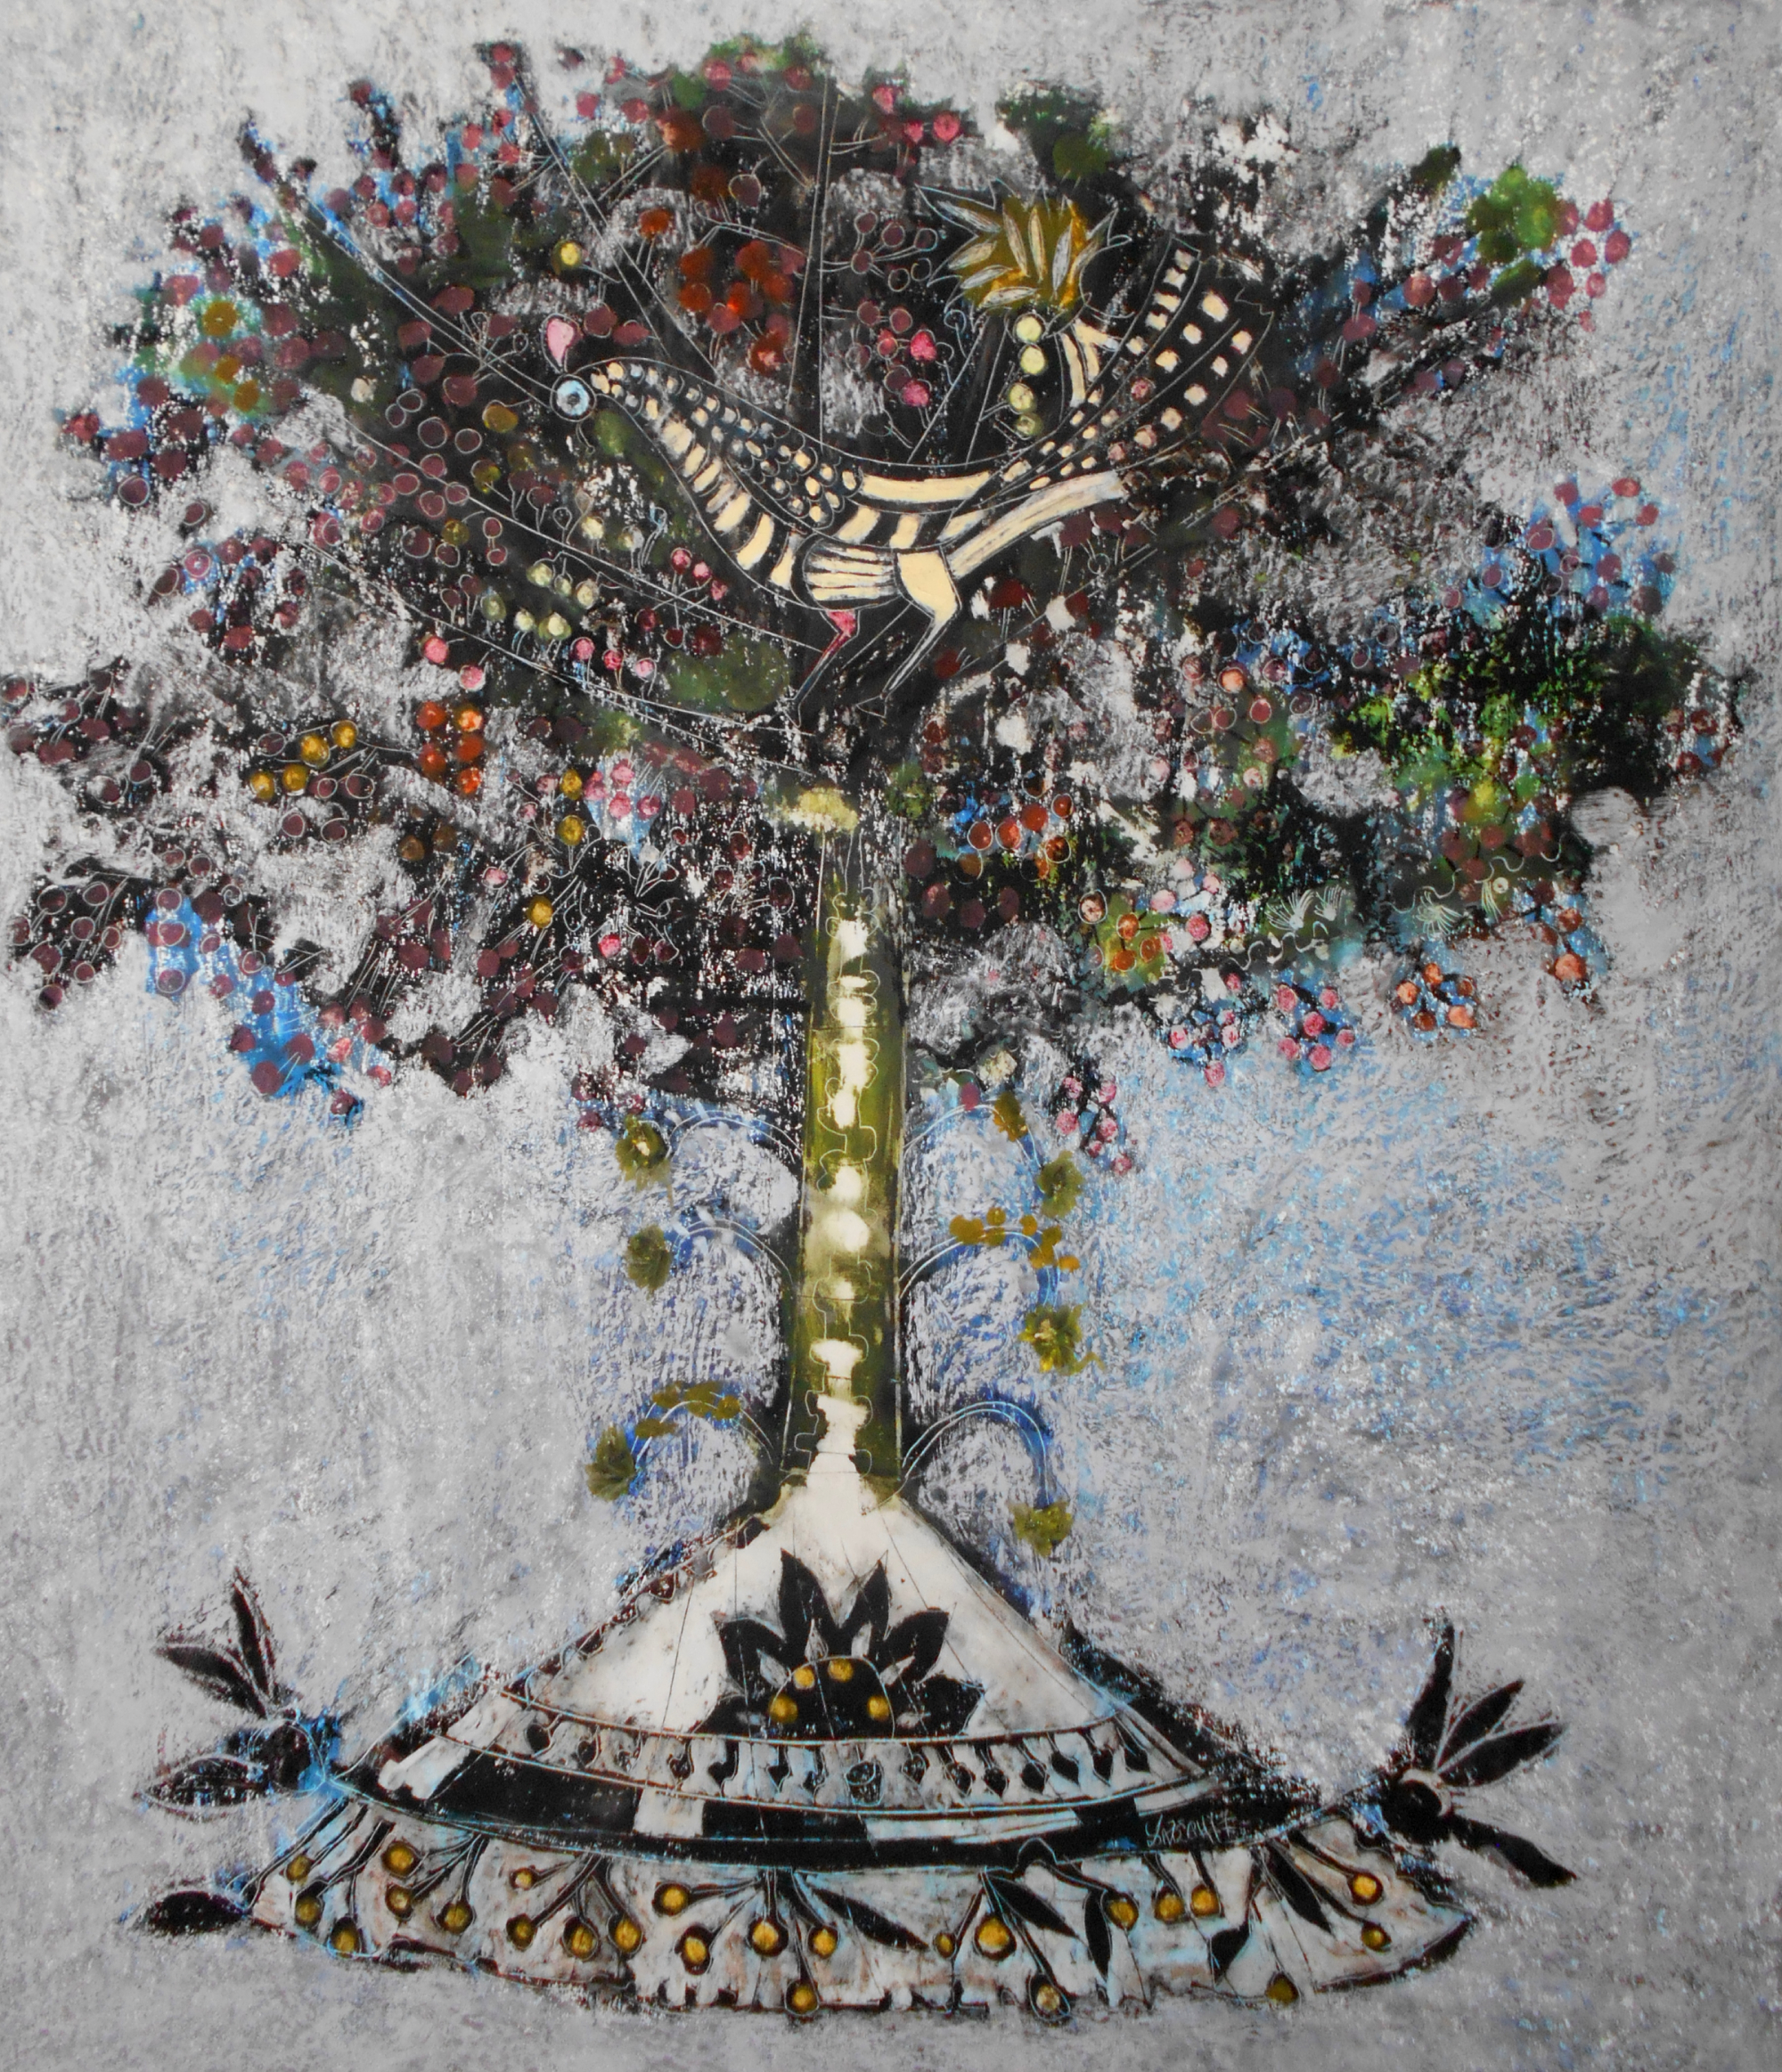 TREE OF LIFE II, 80X70,oil pastel on cardboard, 2017